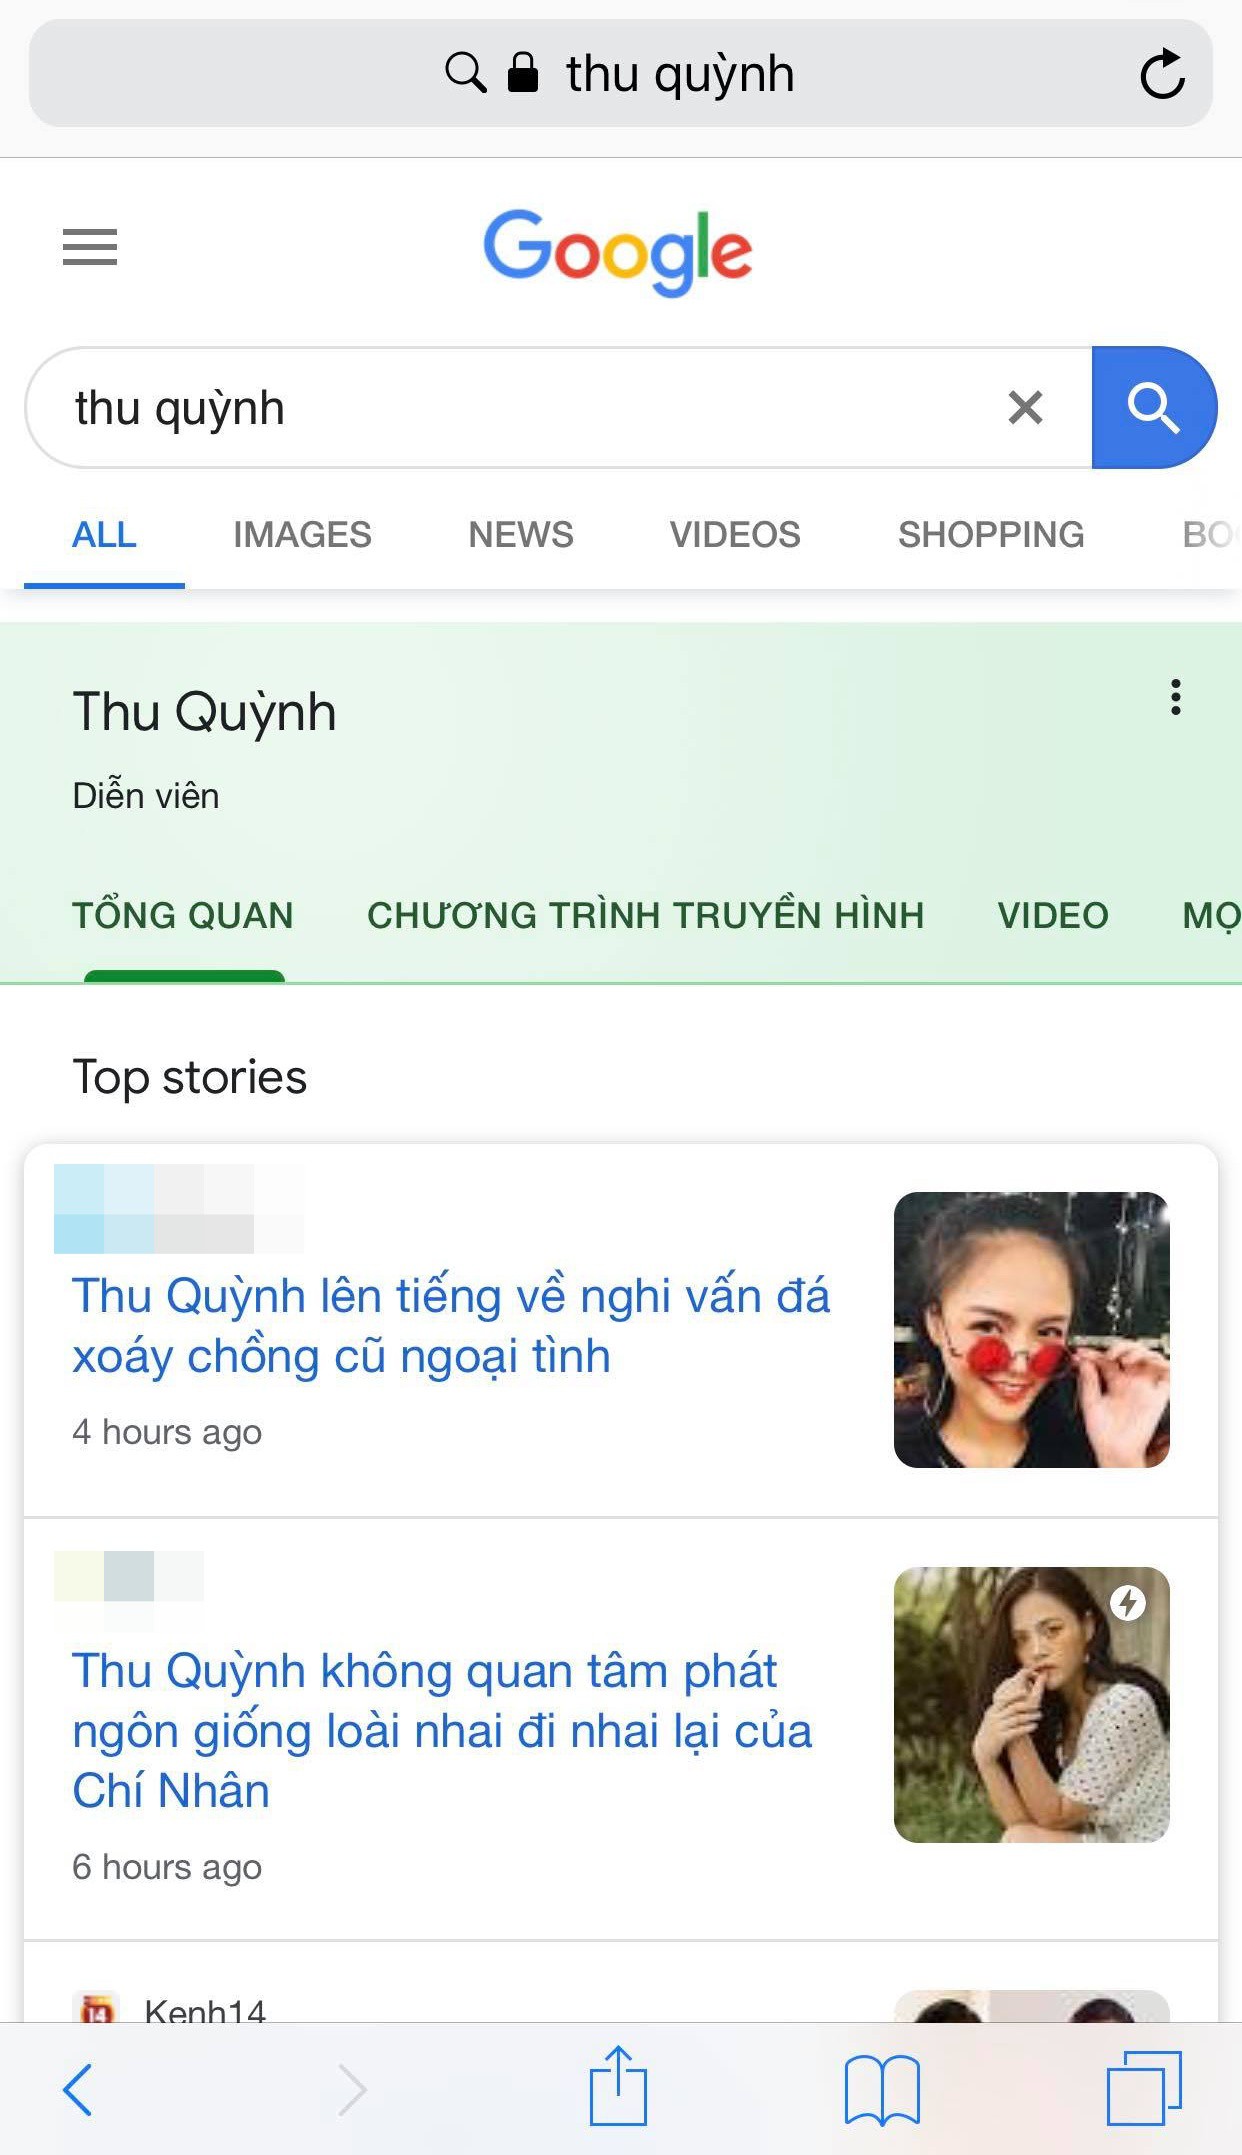 Hậu lùm xùm hôn nhân Google trả kết quả: Thu Quỳnh là diễn viên, Chí Nhân là chồng cũ Thu Quỳnh còn Minh Hà là nobody - Ảnh 1.